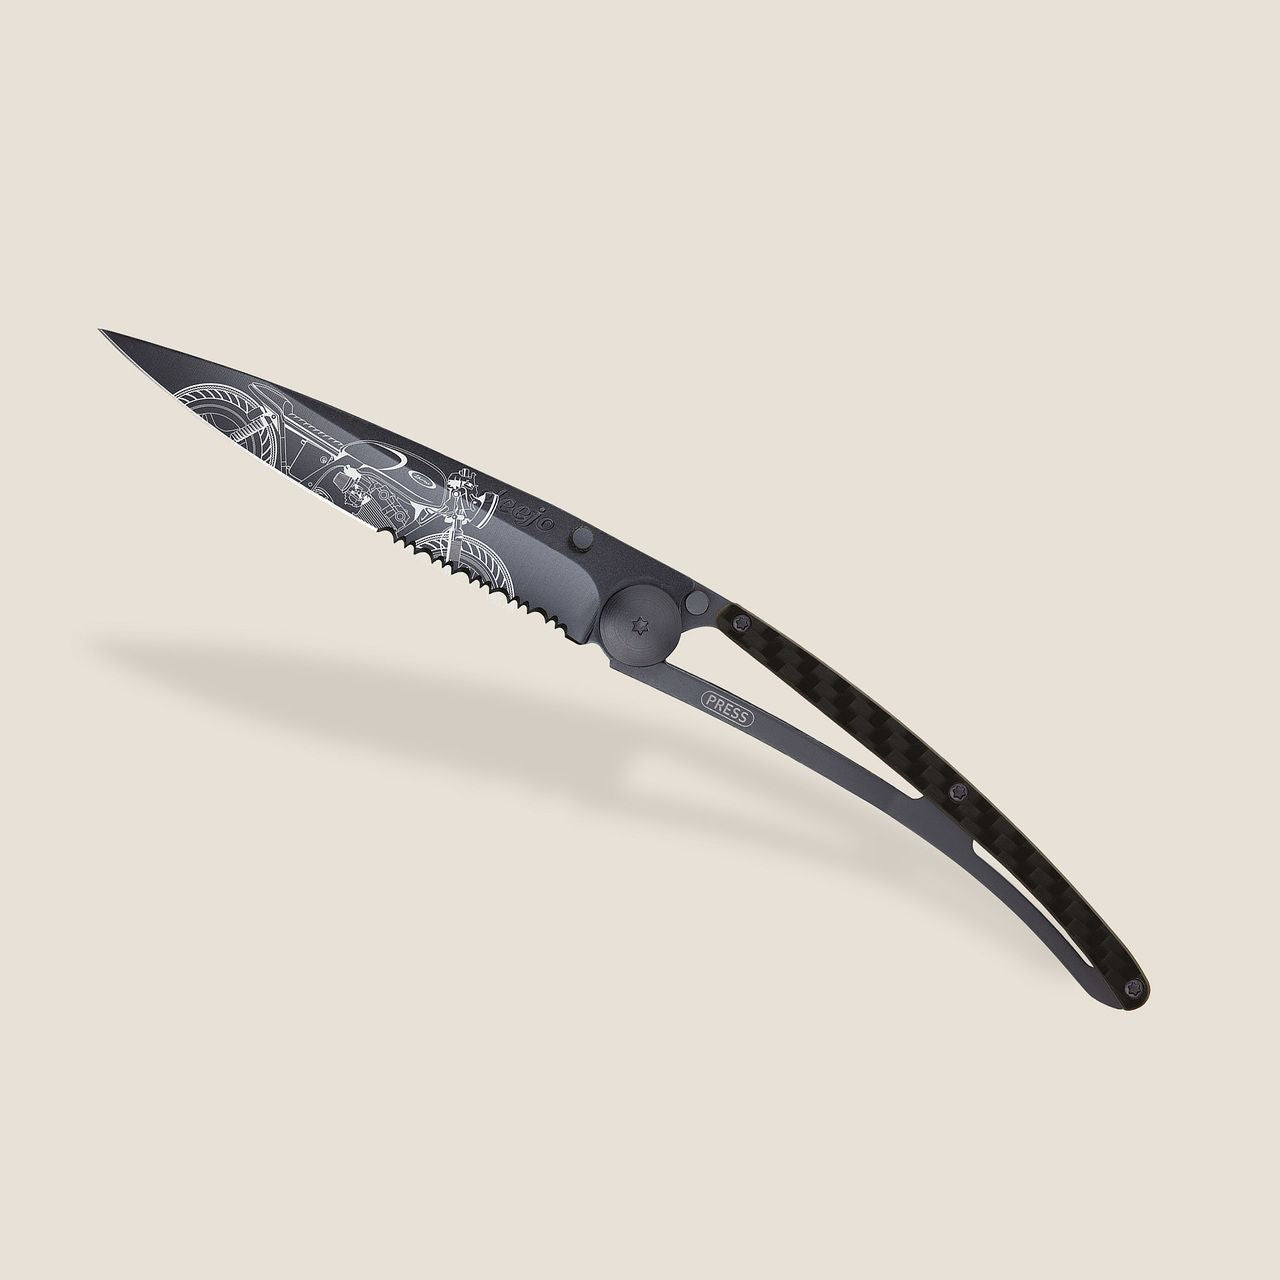 Deejo Serrated 37G Carbon / Café Racer Pocket Knife